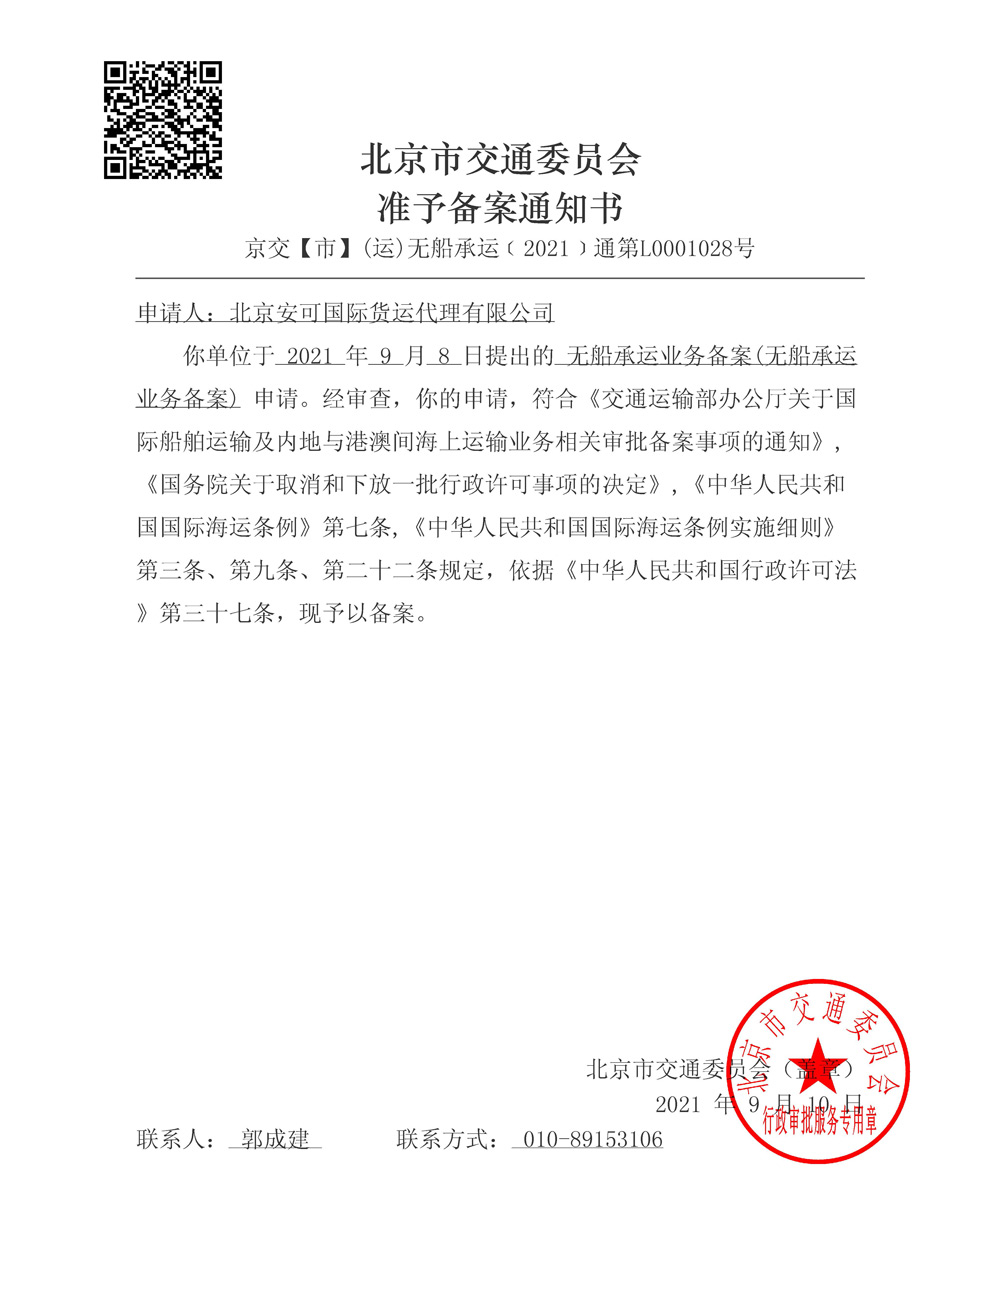 北京市交通委员会准予备案通知书